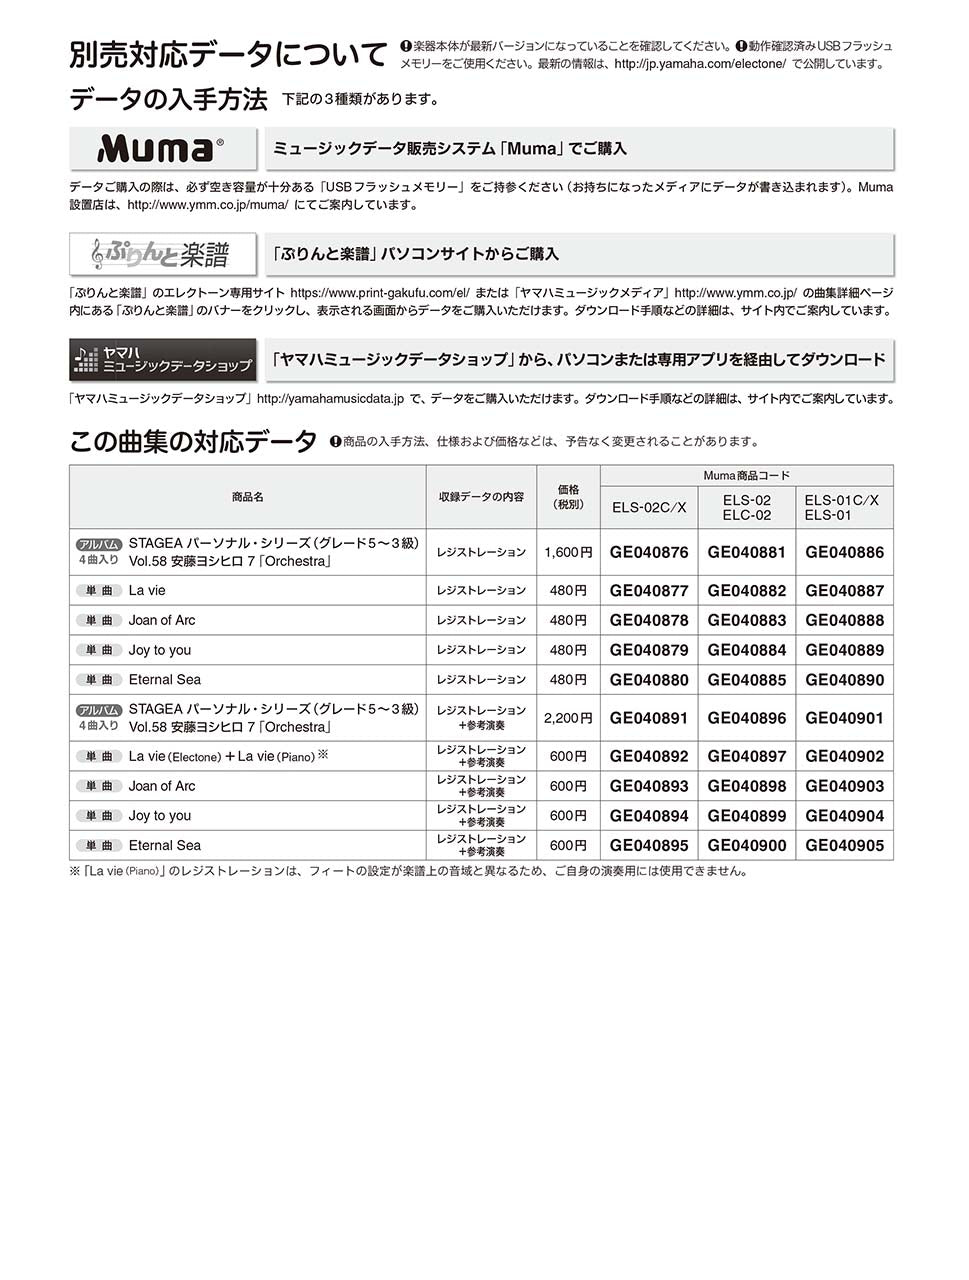 STAGEA パーソナル 5～3級 Vol.58 安藤ヨシヒロ7 「Orchestra」_1